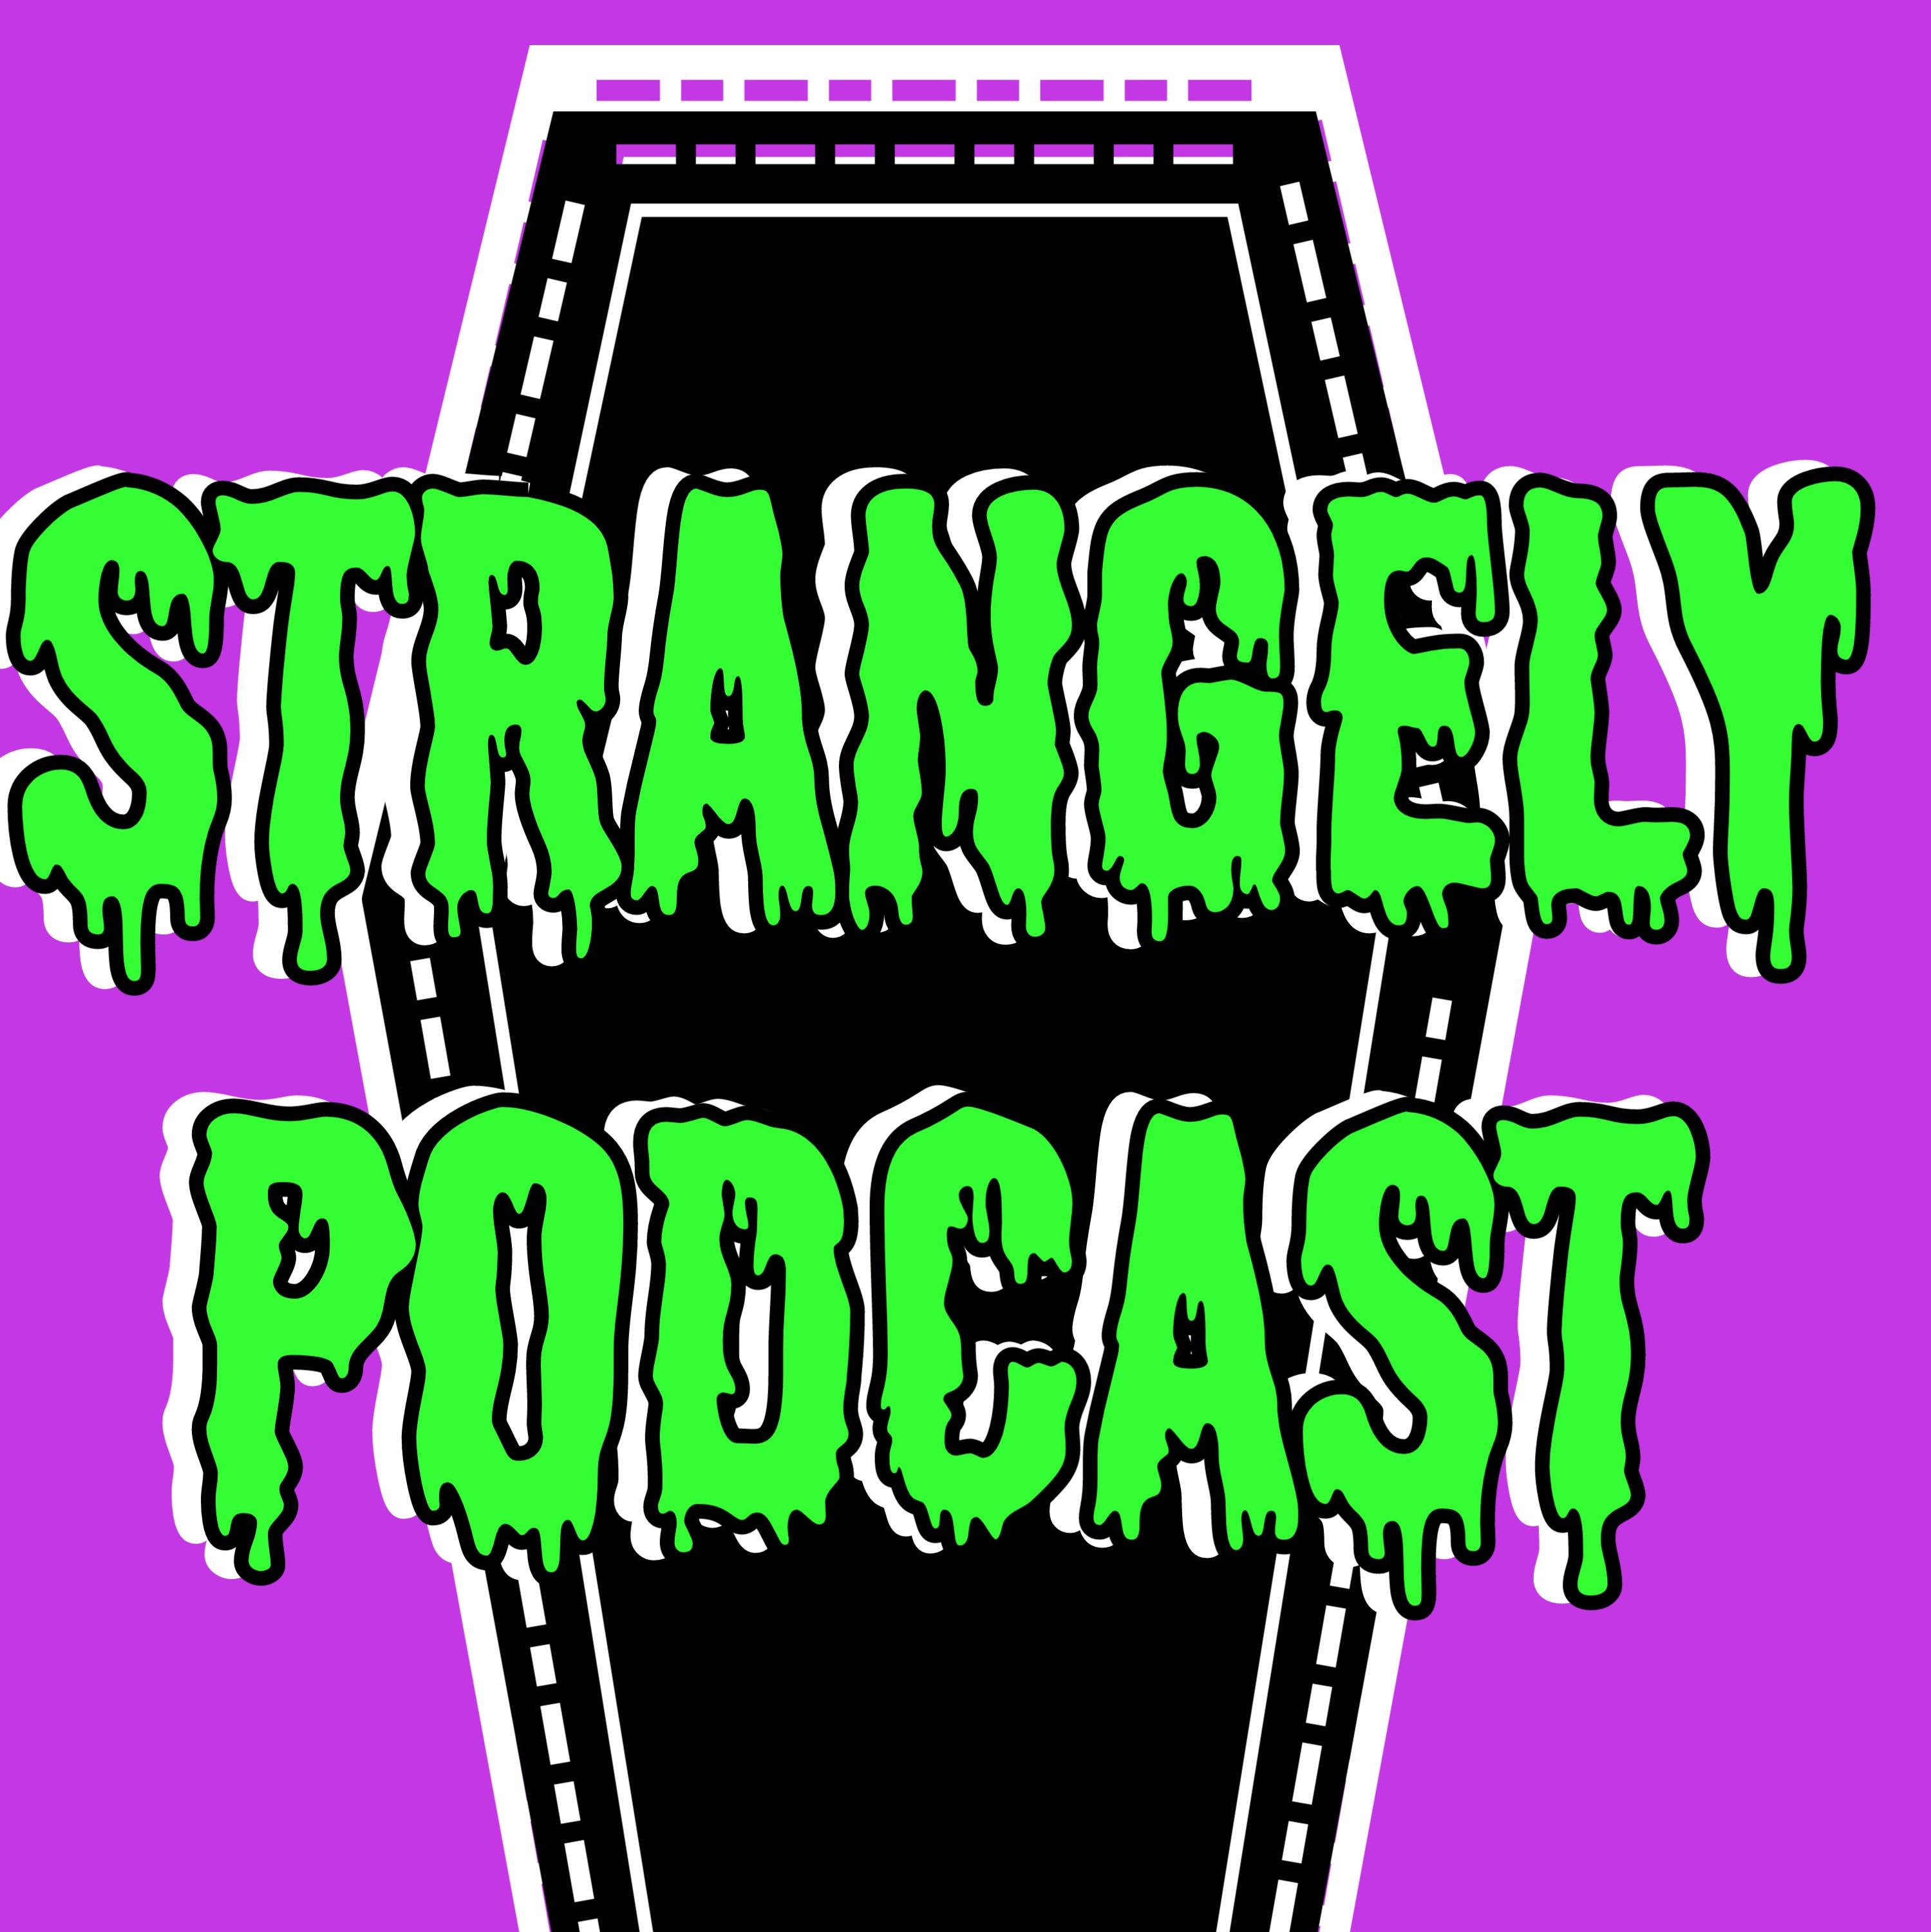 Strangely Podcast